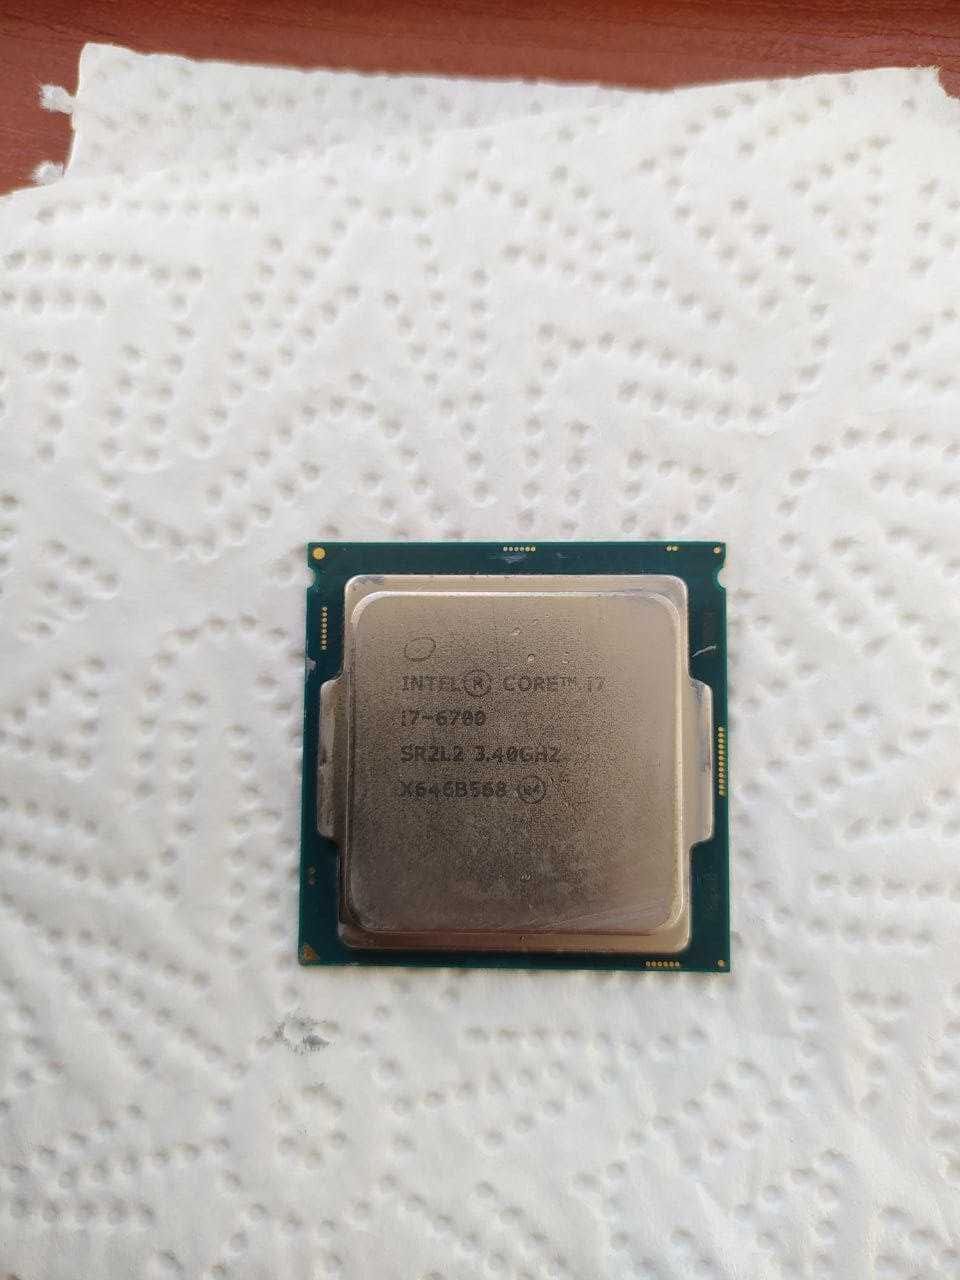 Процессор Intel Core i7-6700